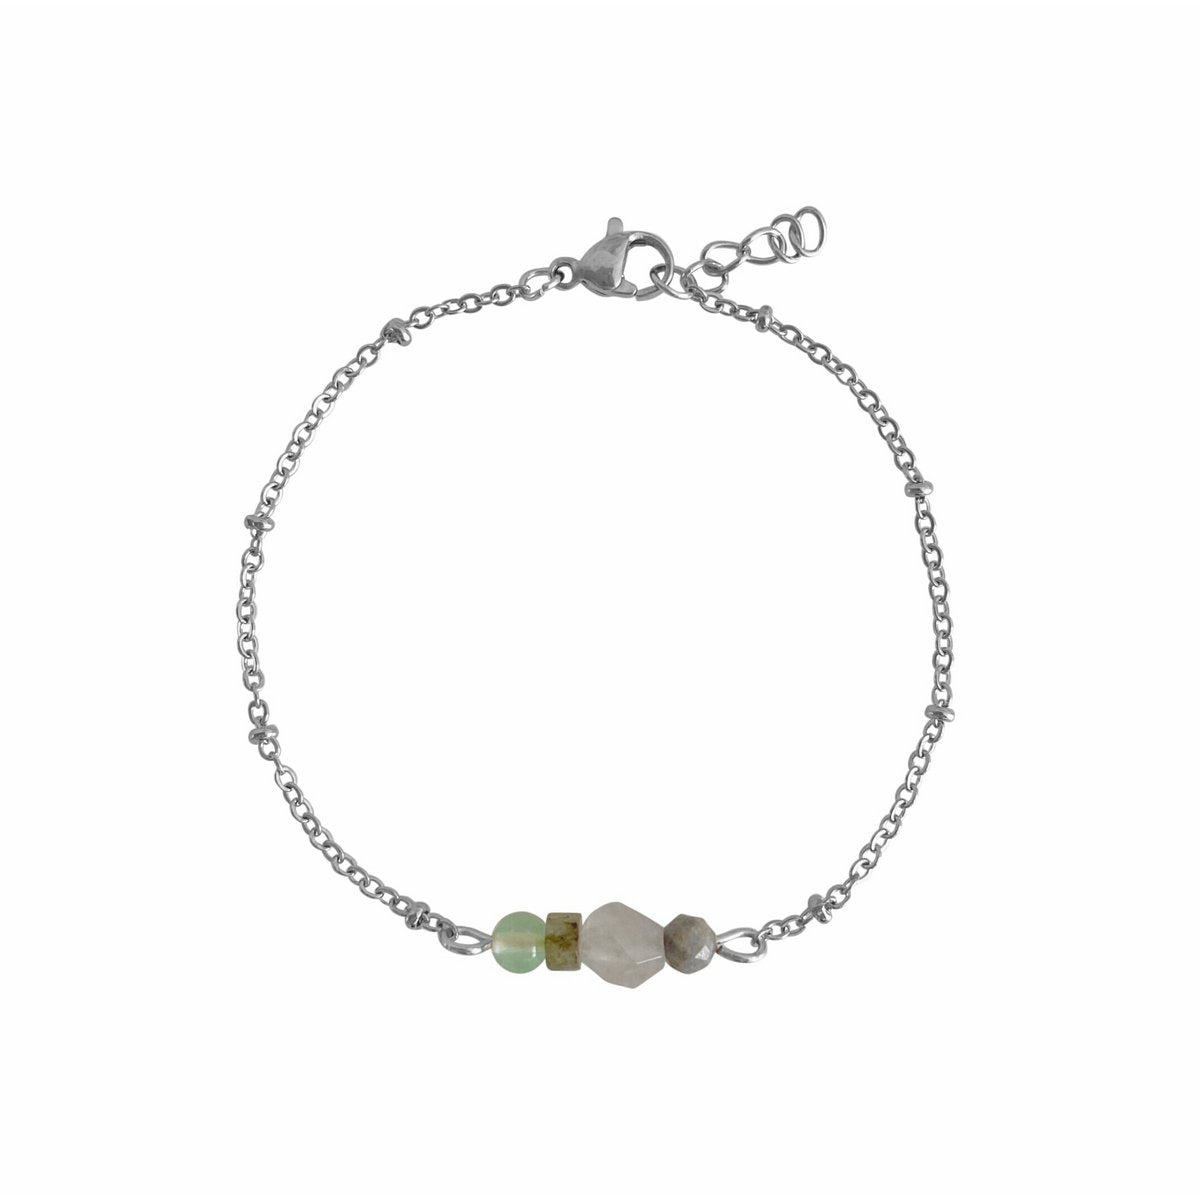 Pulsera "Power" de piedras preciosas de jade, labradorita, ágata y zafiro - Plata